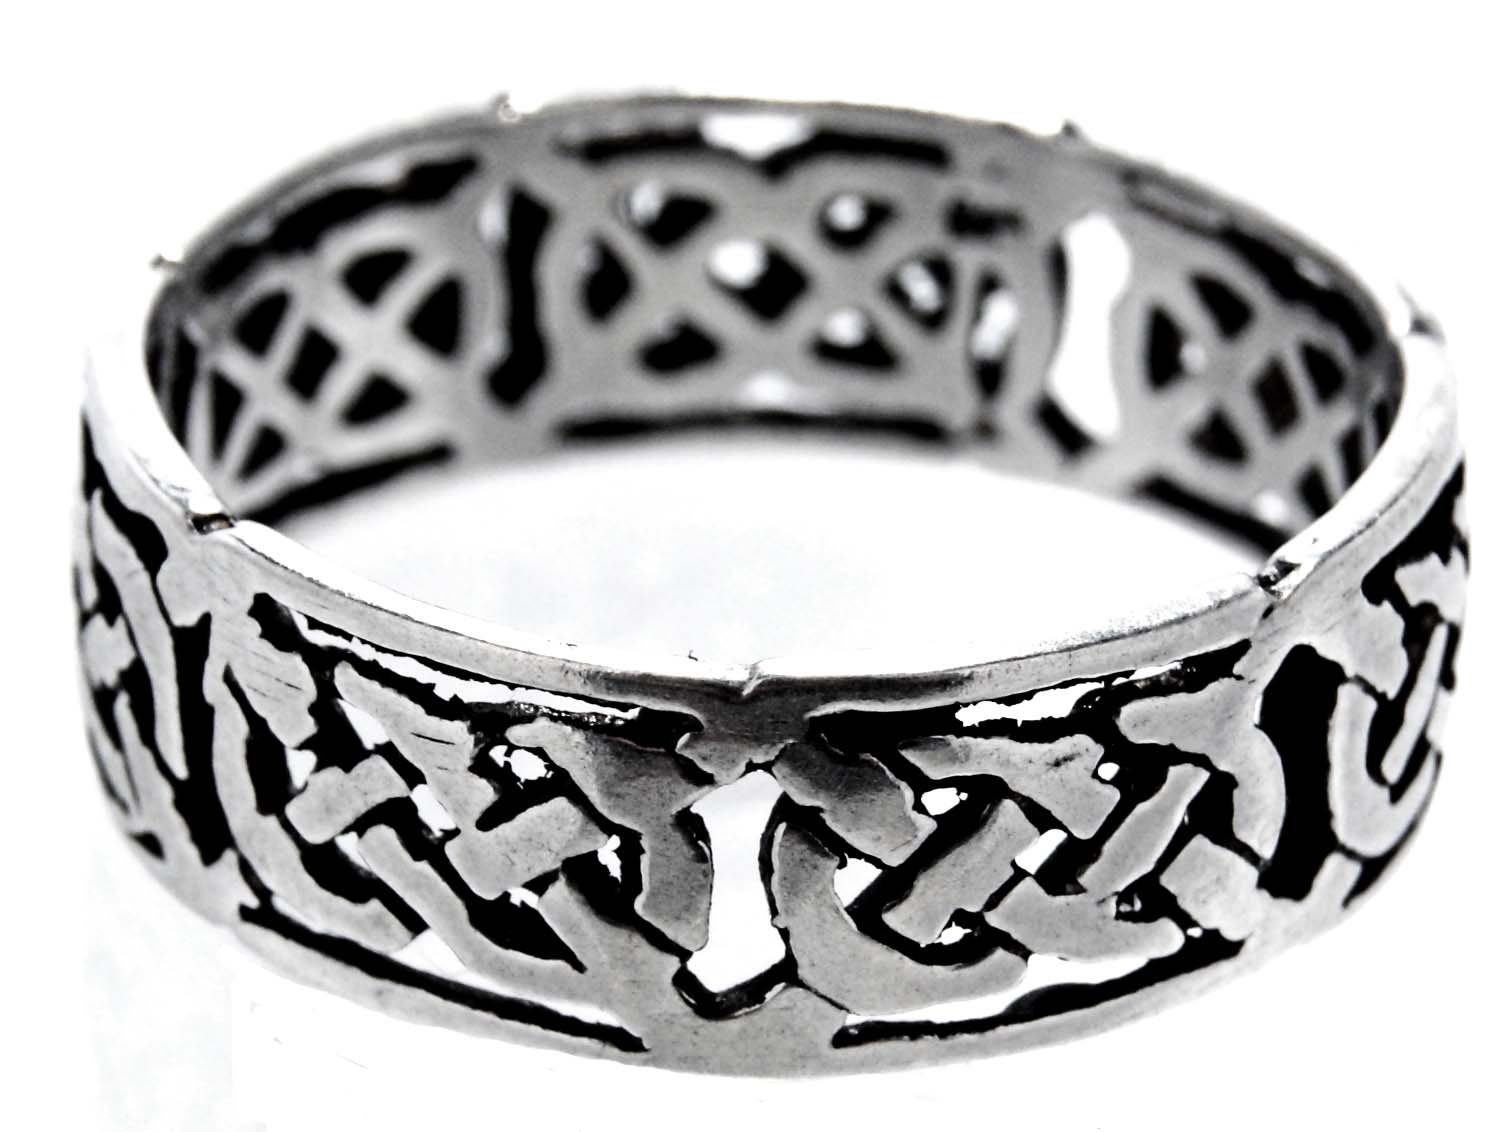 46-74 Fingerring Leather Knoten Silber of Gr. Kiss Keltenknoten Silberring 925 keltische Ring